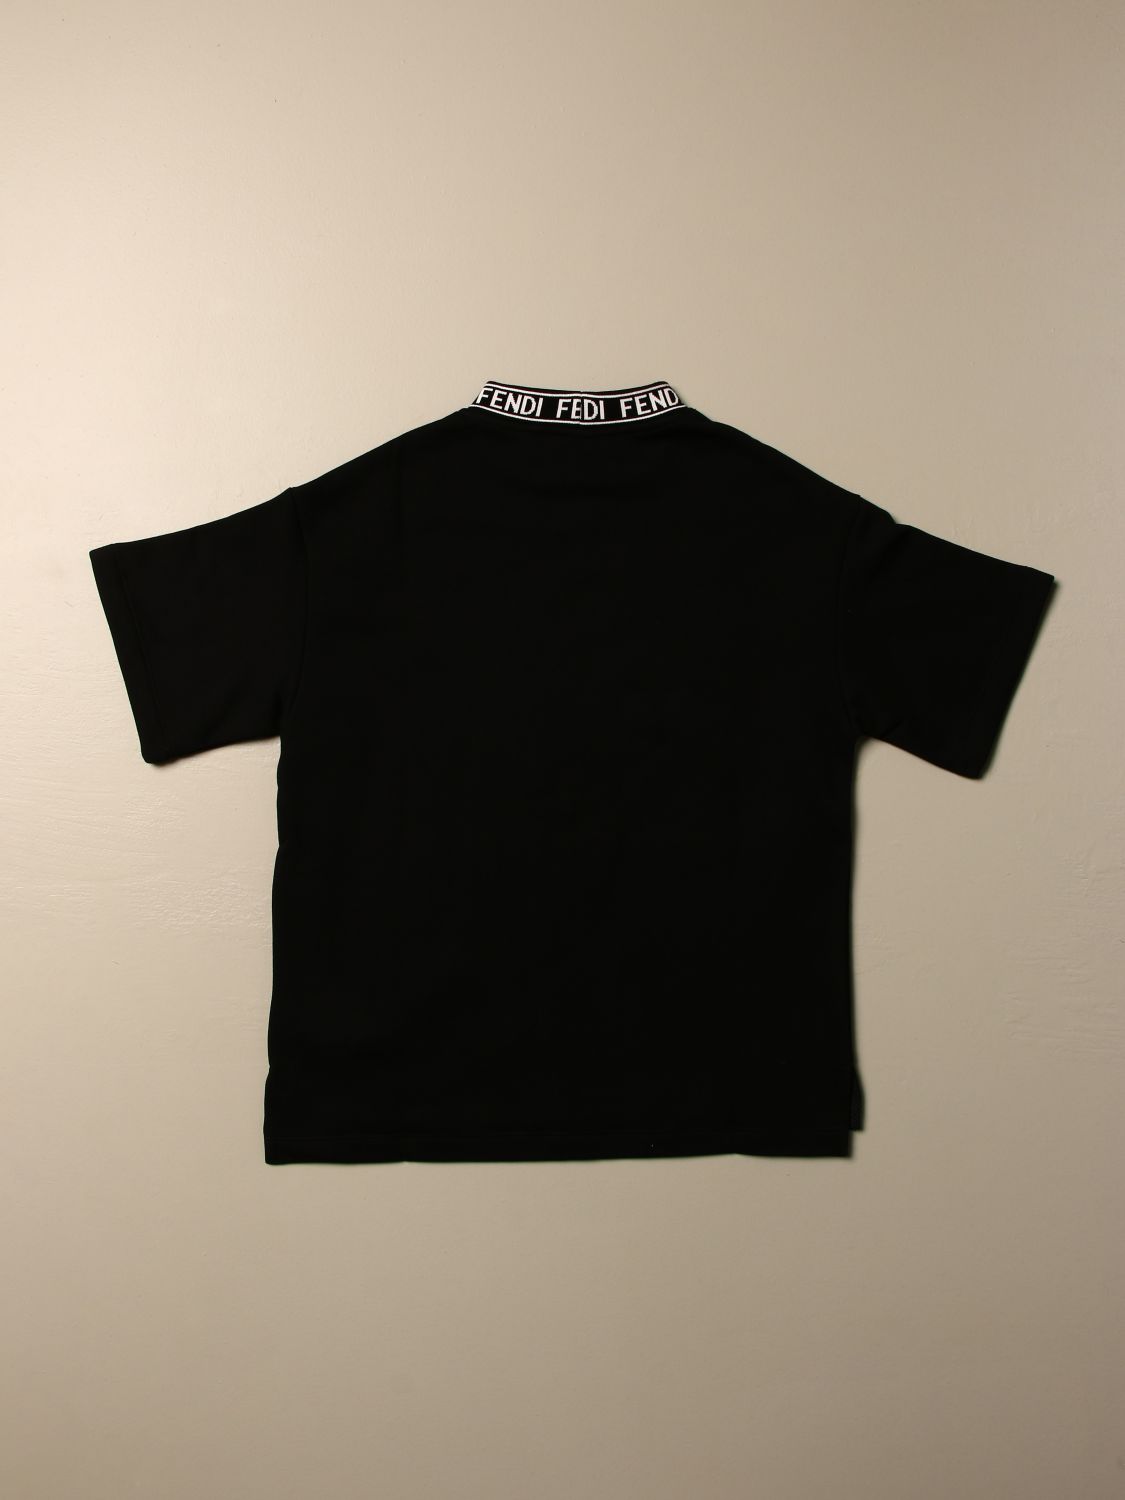 fendi black t shirt